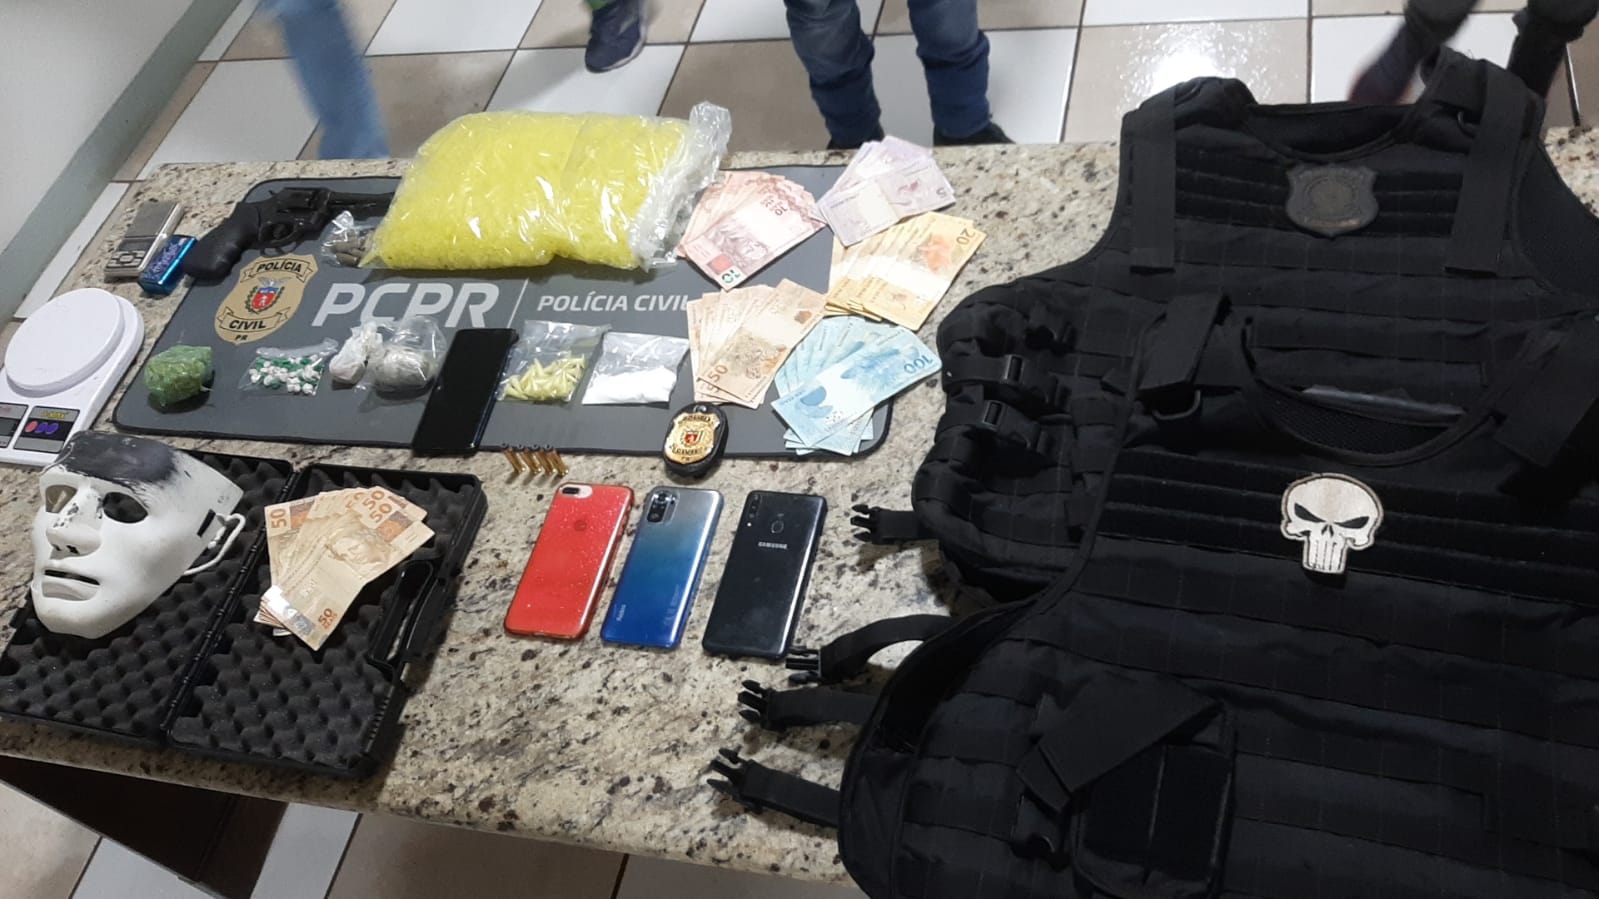 Polícia Civil de Apucarana apreende arma, colete e drogas